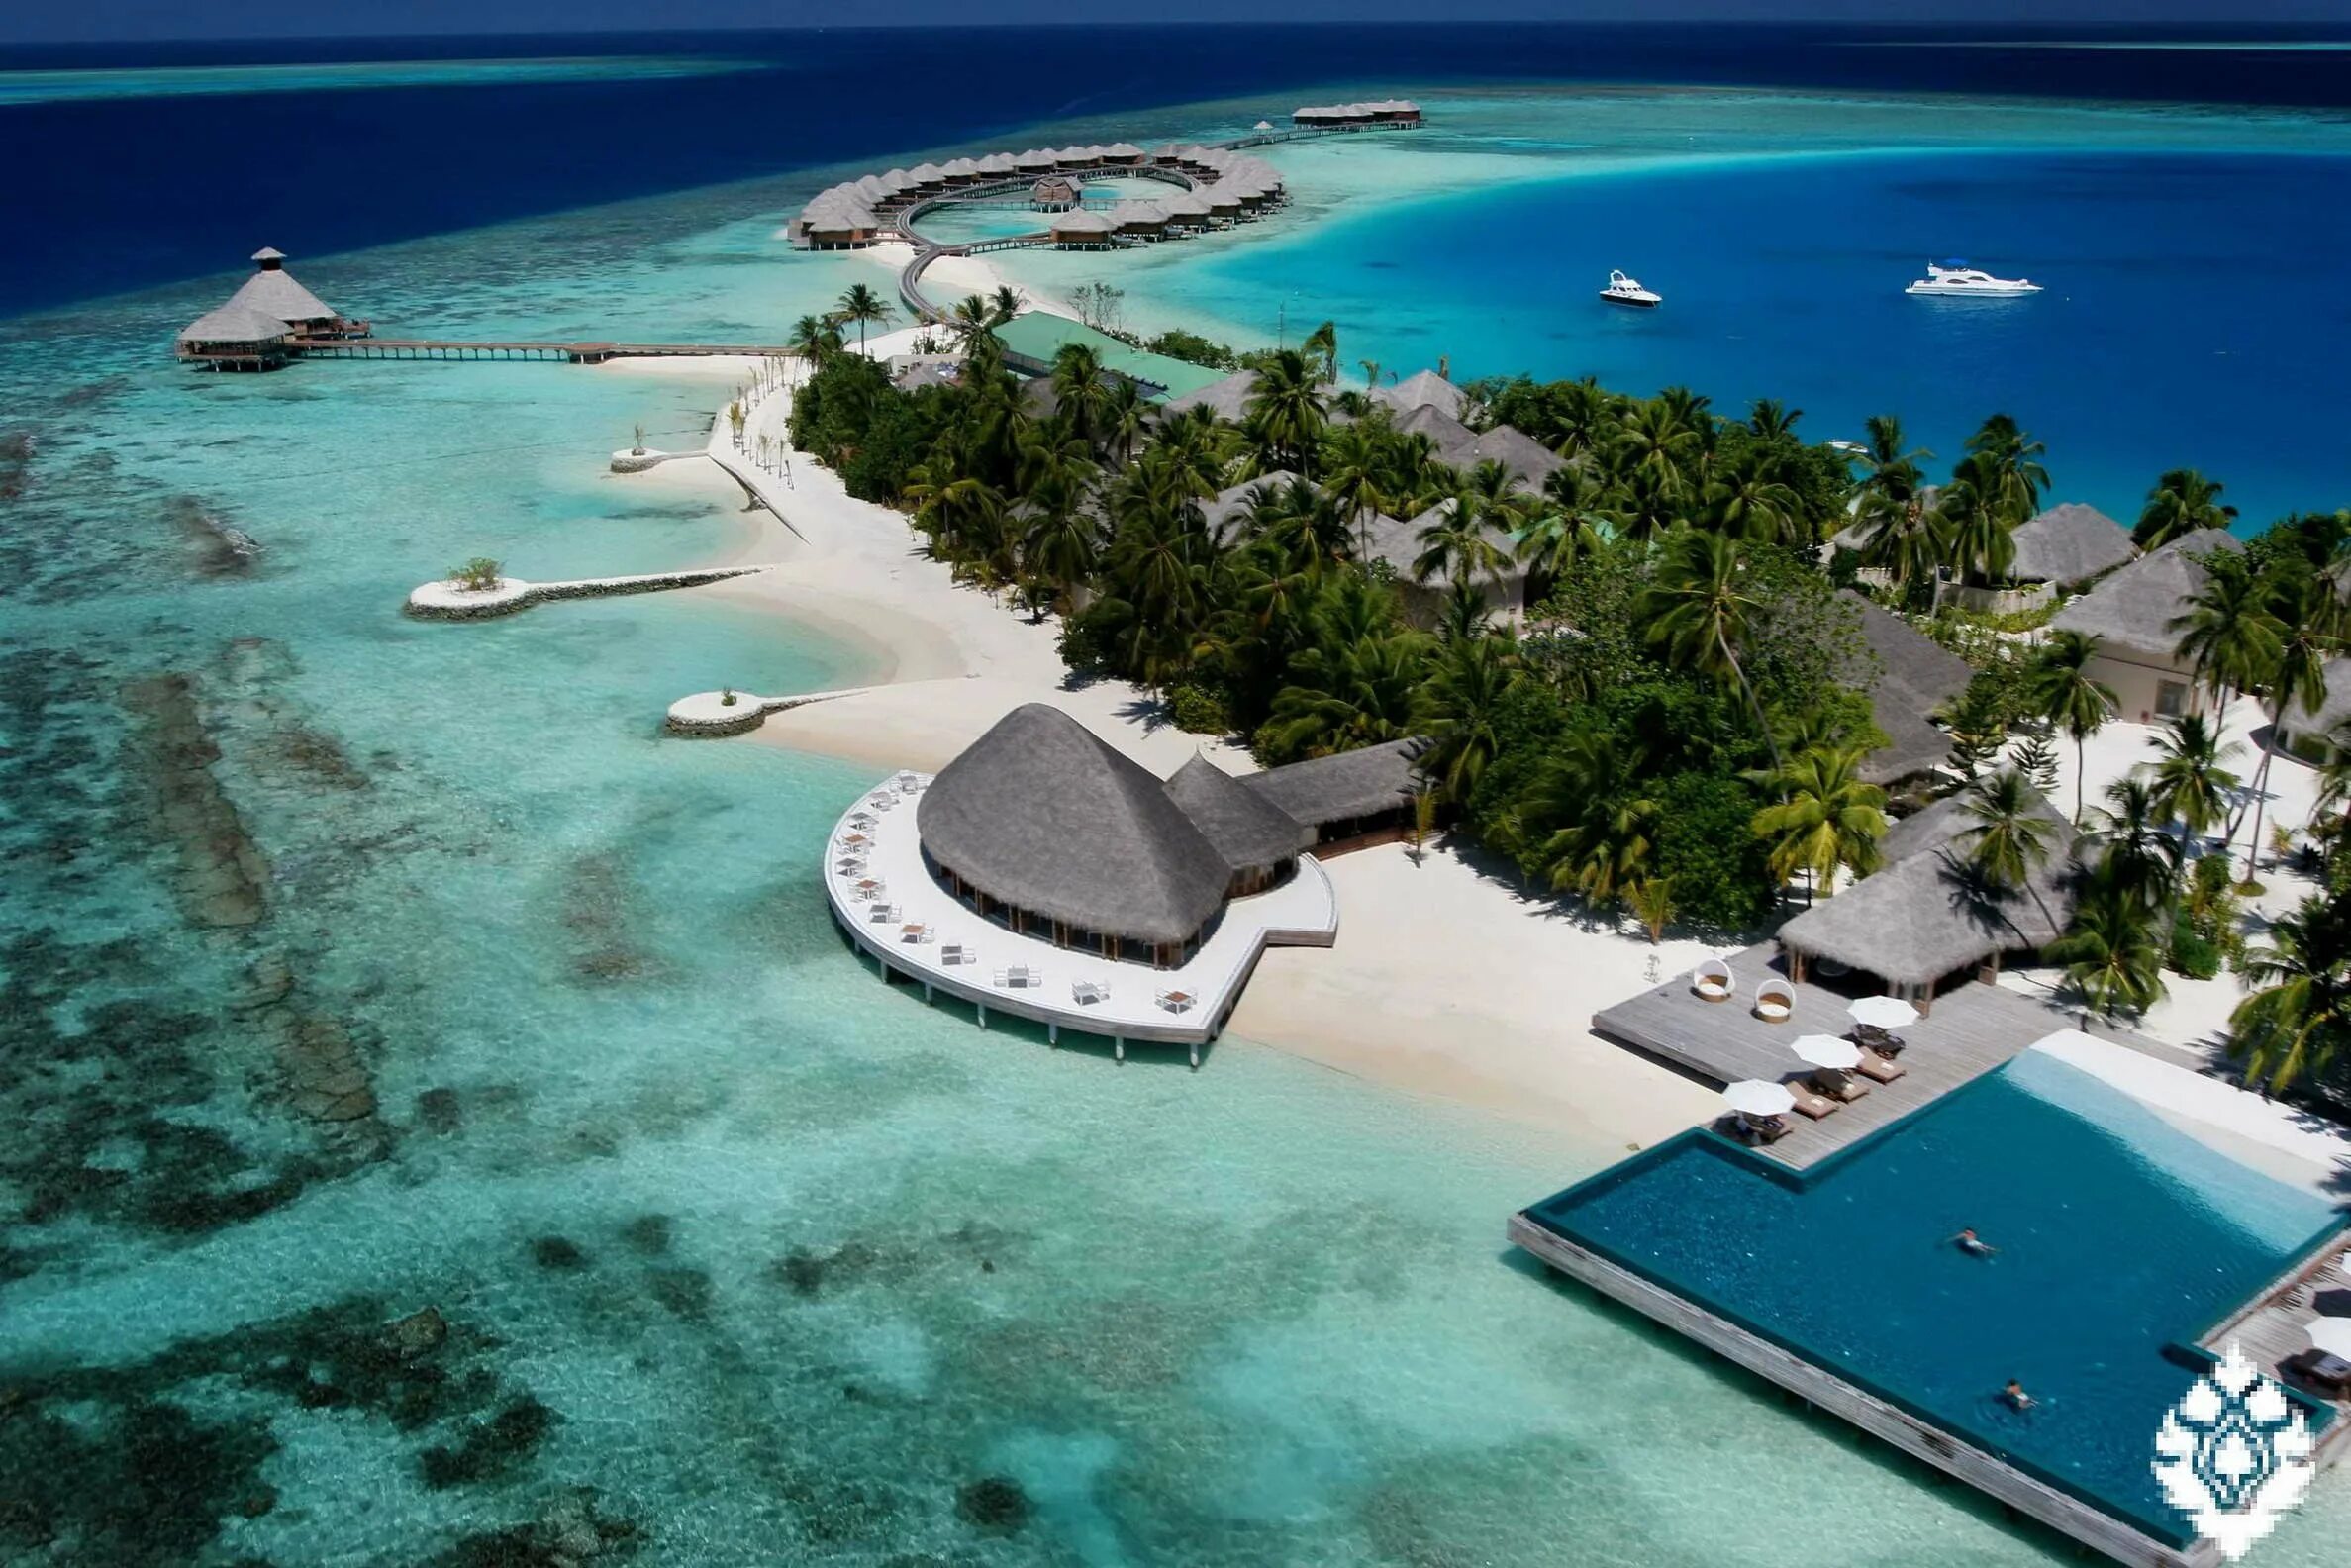 Остров Ган Мальдивы Лааму Атолл. North male Atoll Maldives. Мальдивы Мале аэрофото. Эфемерные острова: Мальдивы.